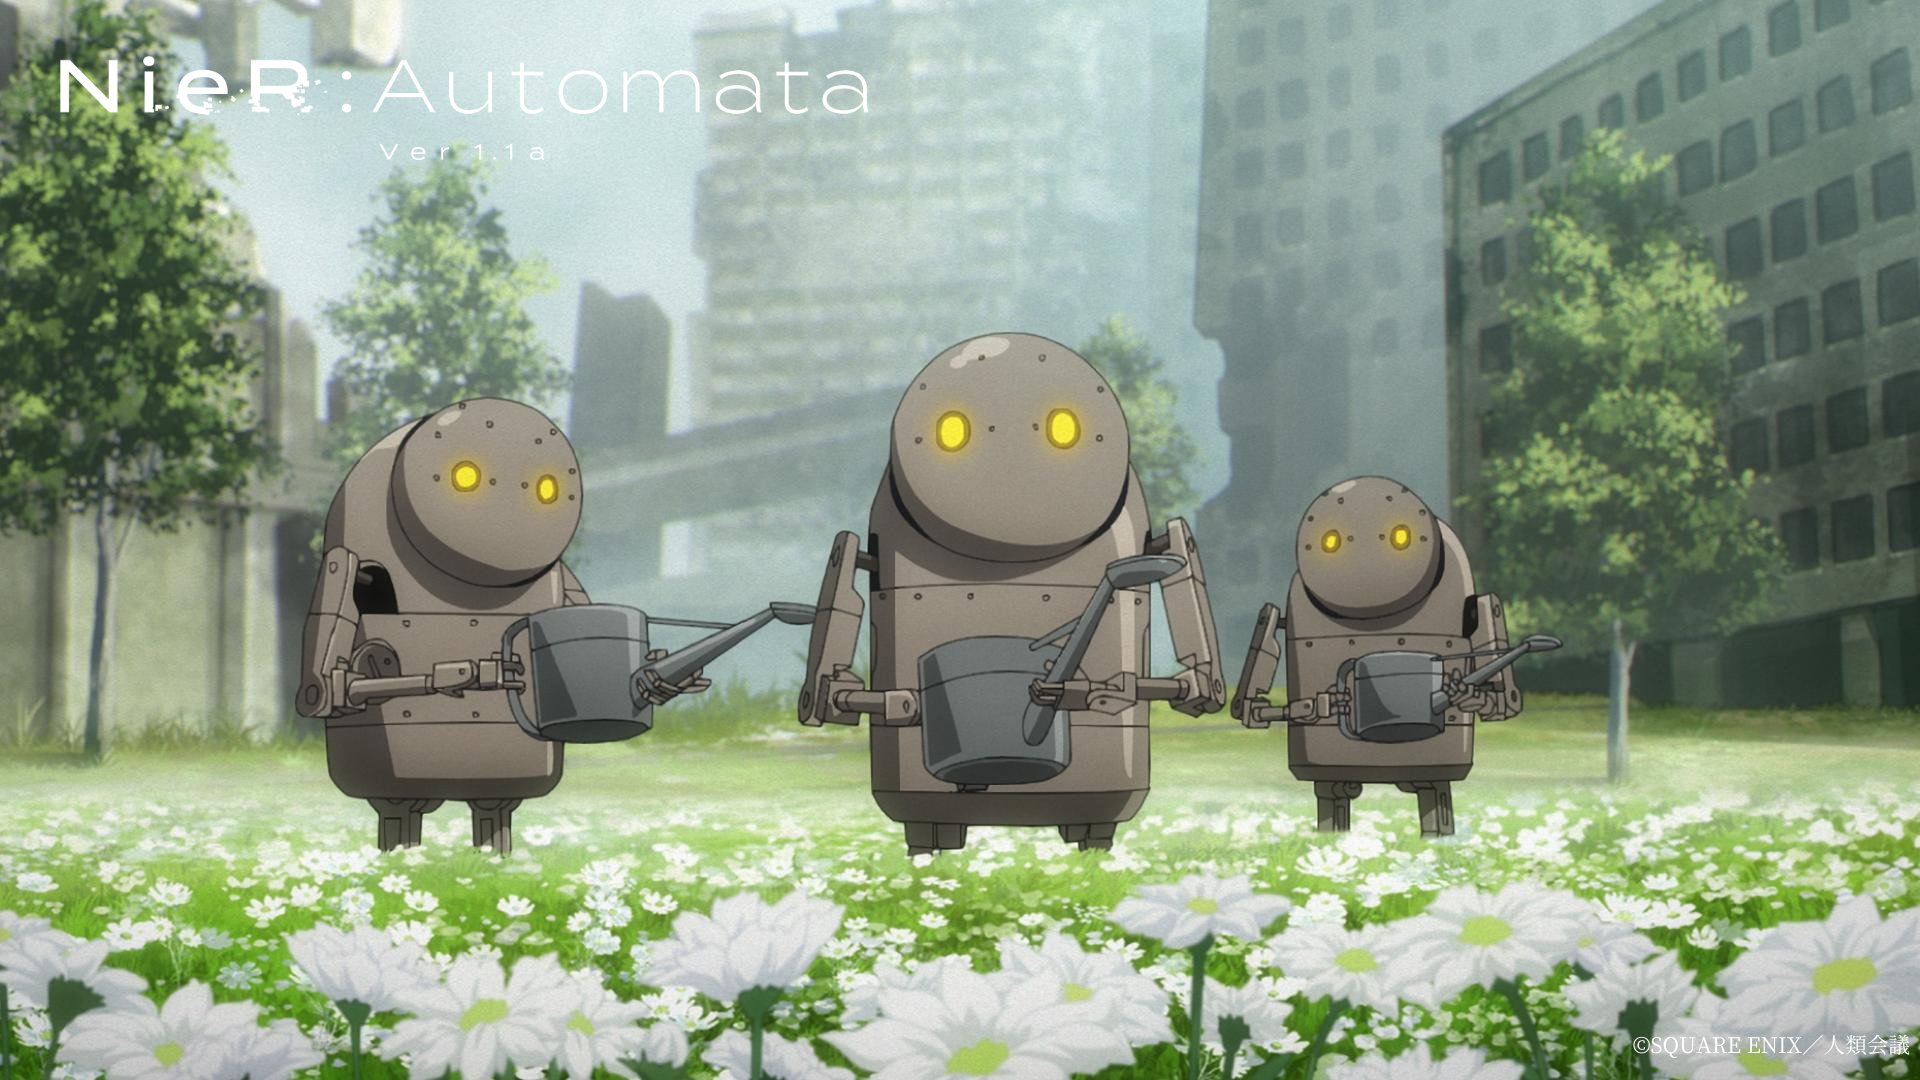 NieR:Automata Ver1.1a anime header